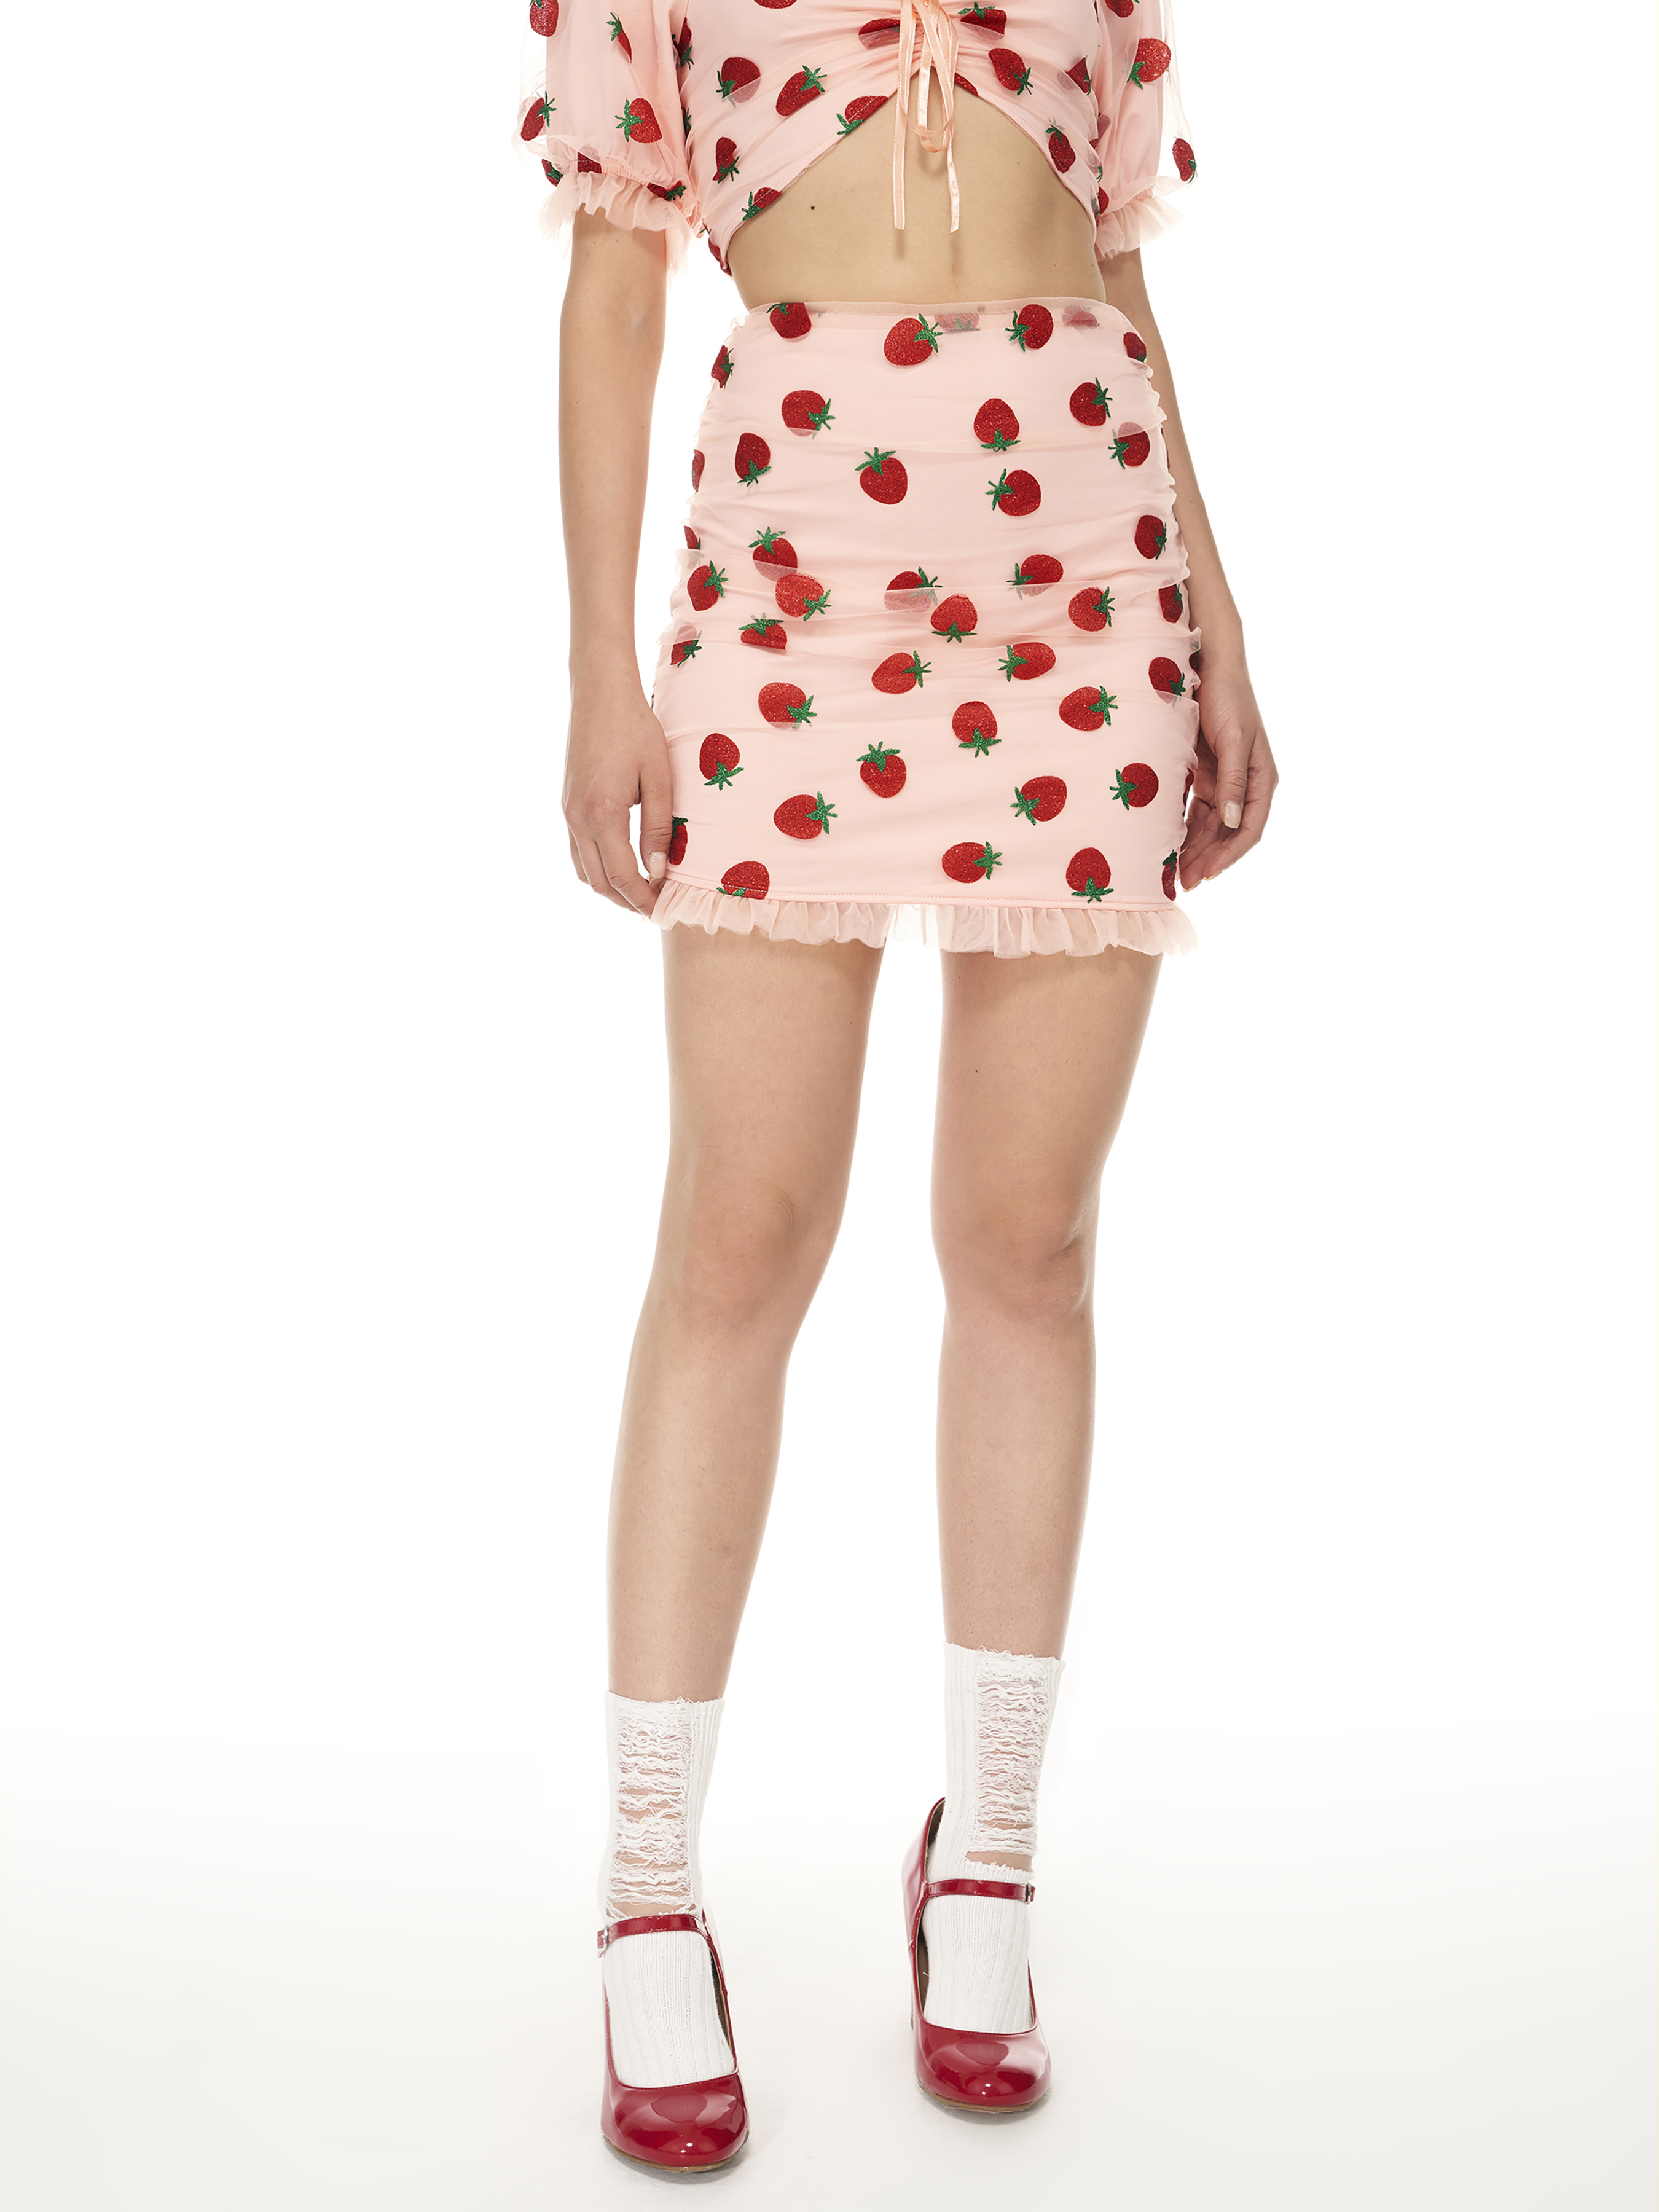 Strawberry Ruffle Mini Skirt - Cider